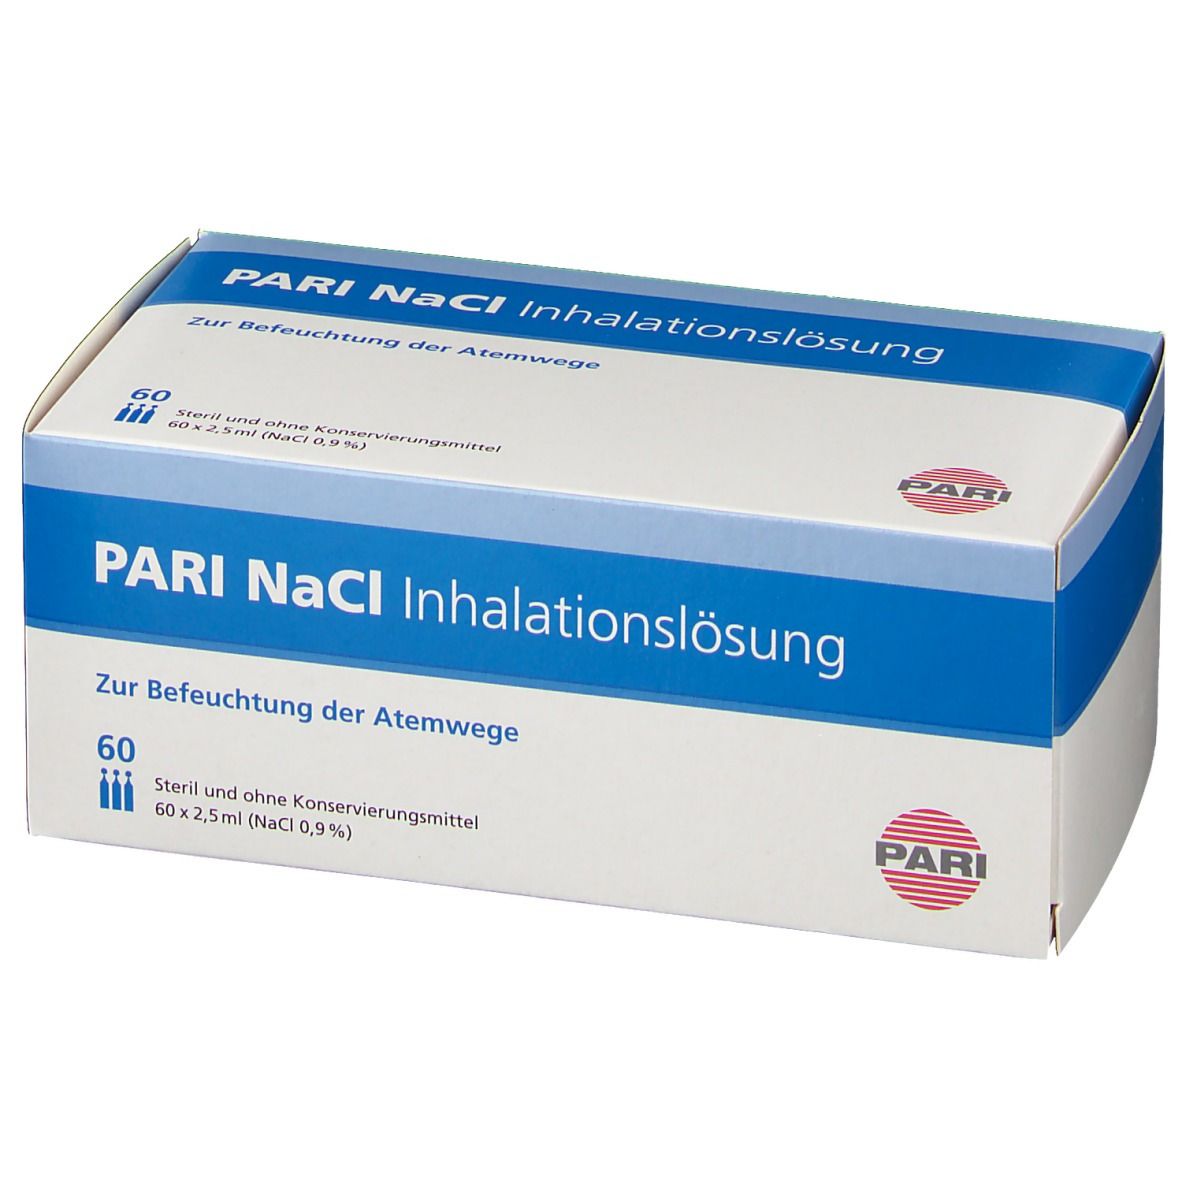 PARI NaCI Solution par inhalation